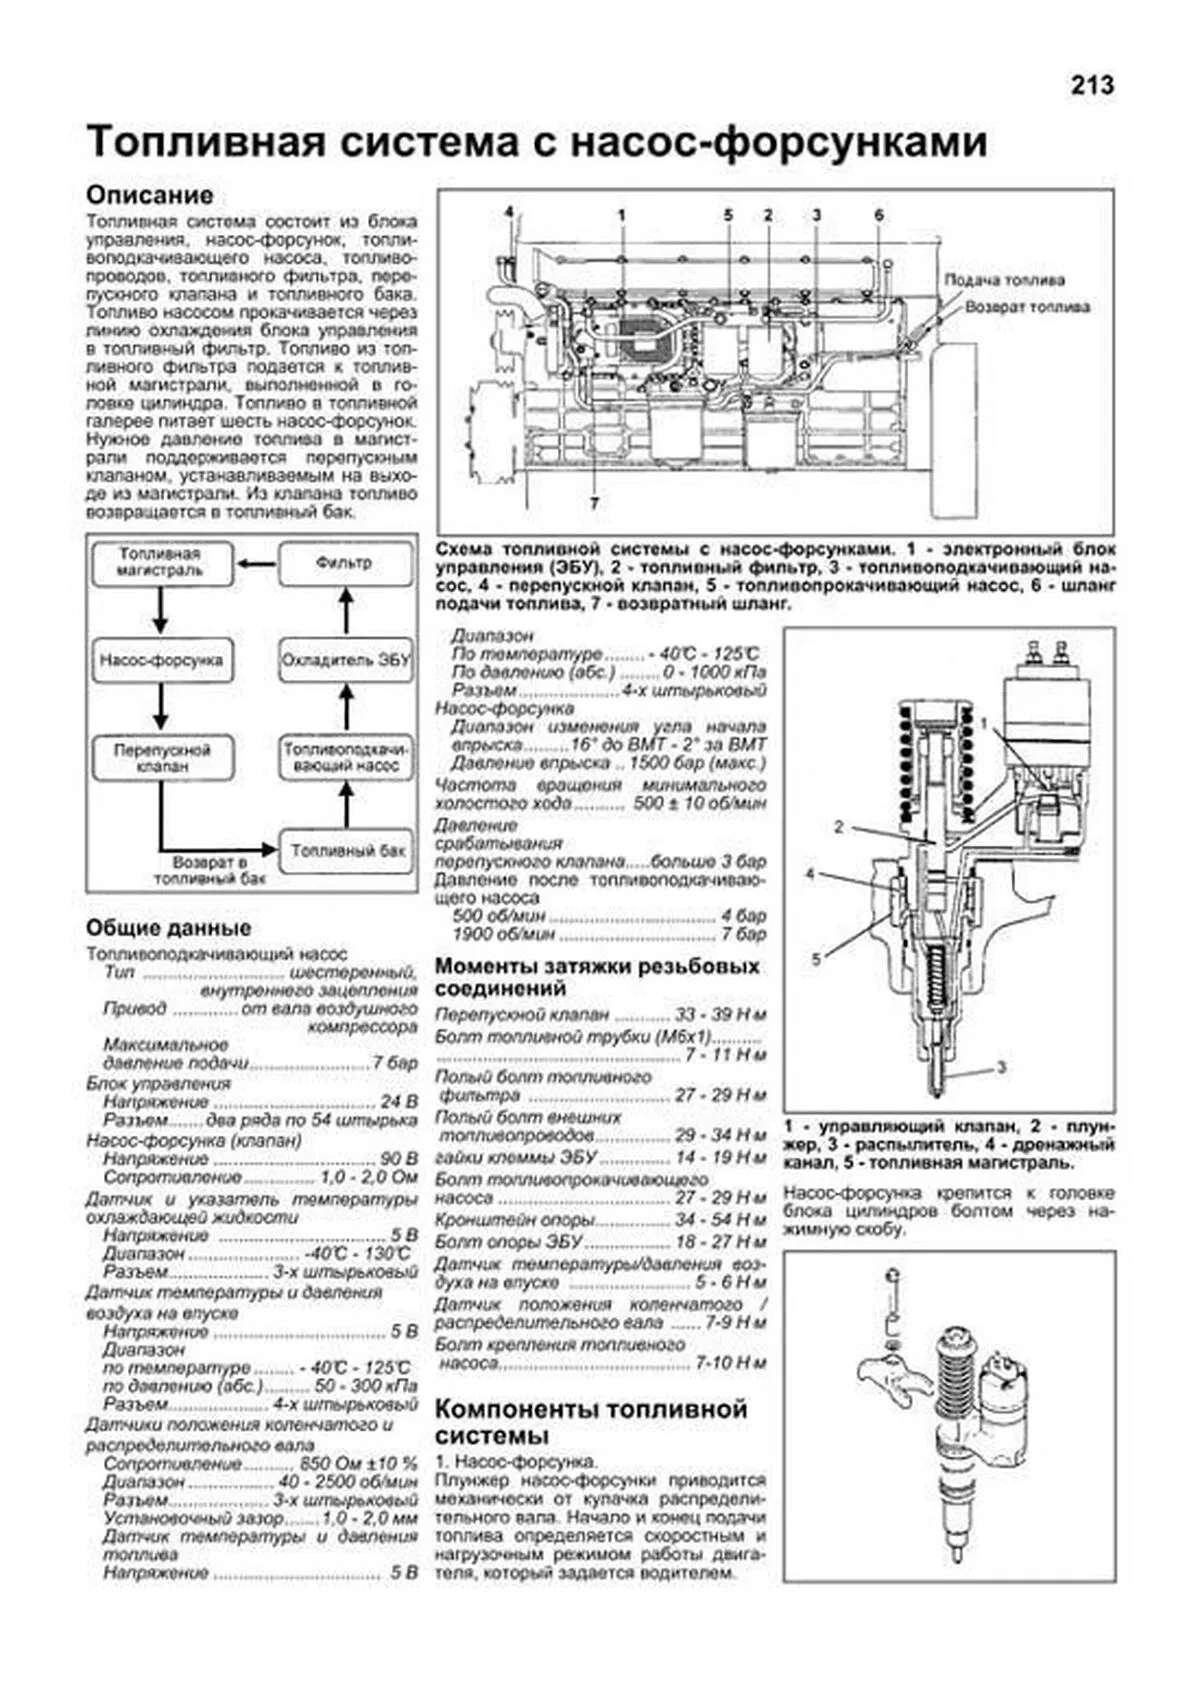 Книга: Двигатели MITSUBISHI (6D22 / 6D22-T / 6D24-T / 6D40 / 6D40-T / 8DC9 / 8DC10 / 8DC11) / HYUNDAI (D6A / D6CA / D8A), сер.ПРОФ. | Легион-Aвтодата